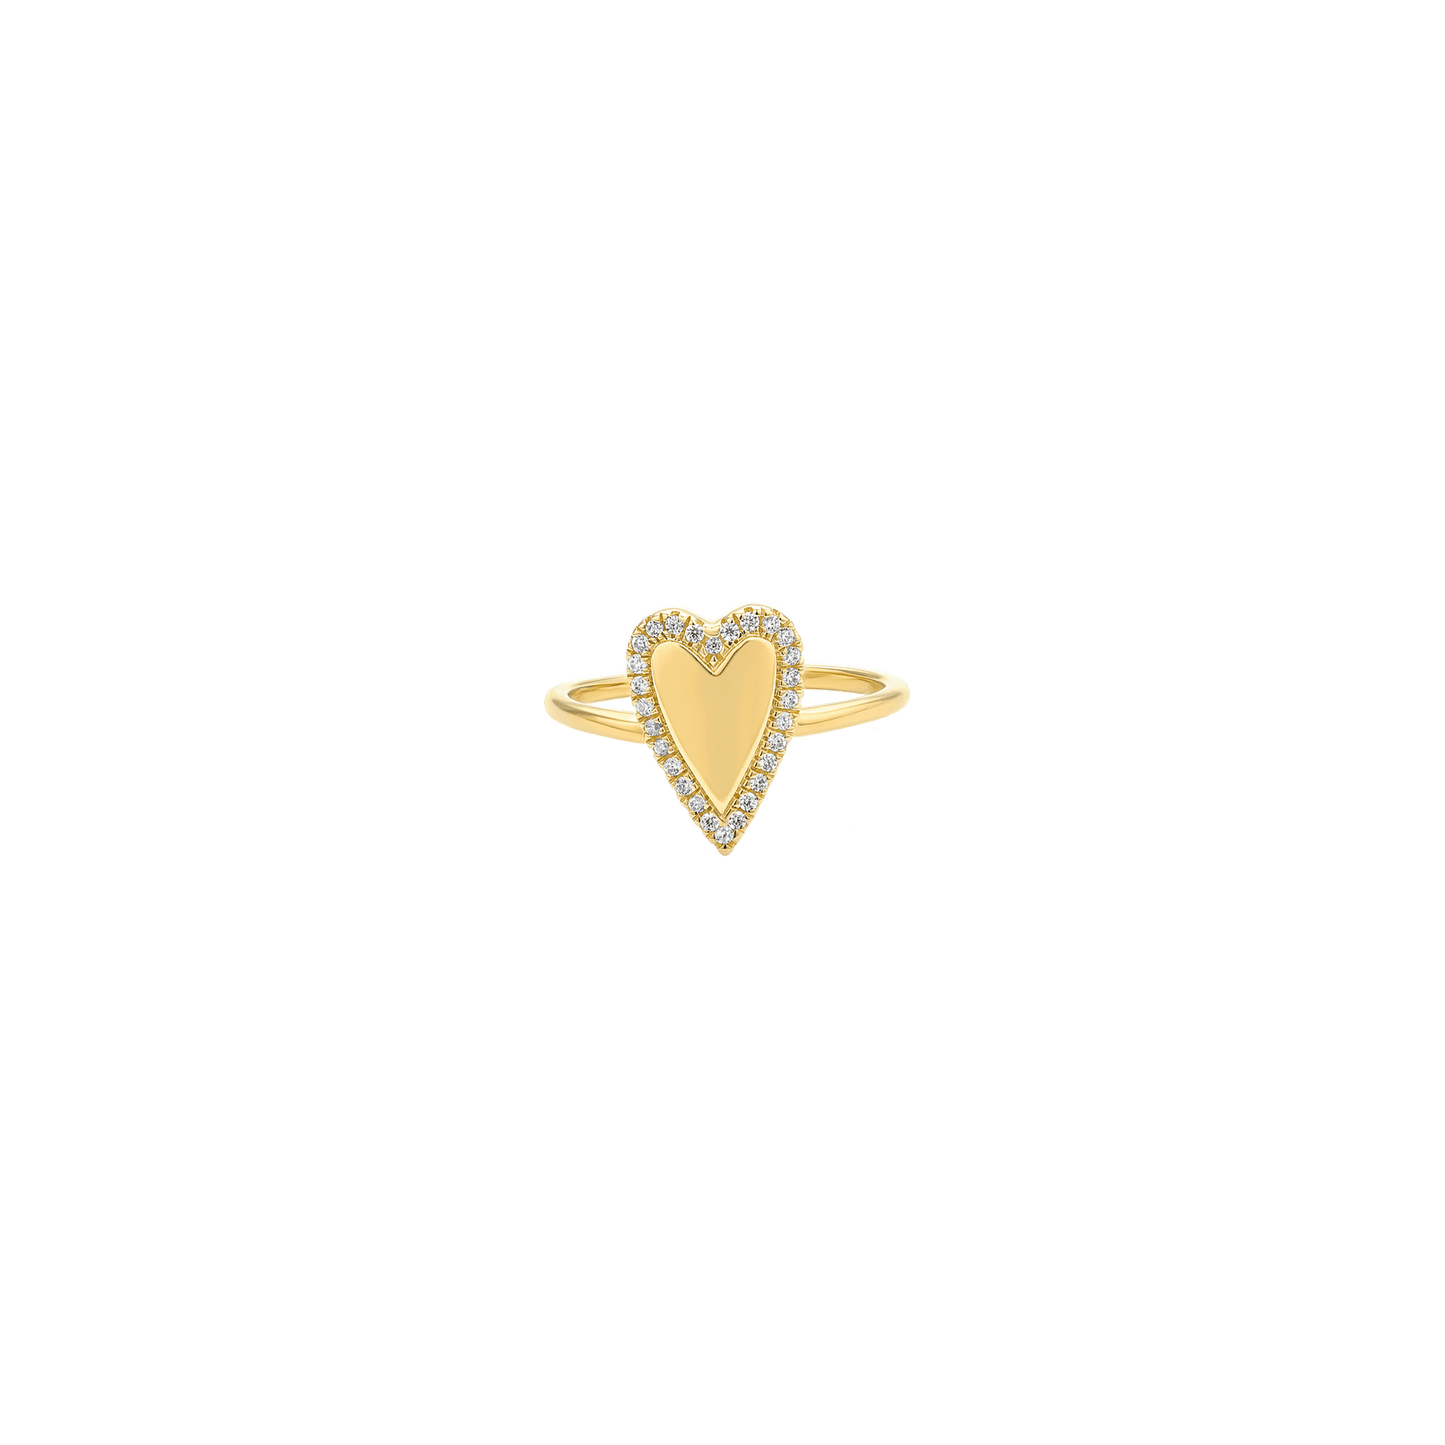 Diamond Outlined Heart Ring - 18K Gold Vermeil Rings magal-dev US 4 